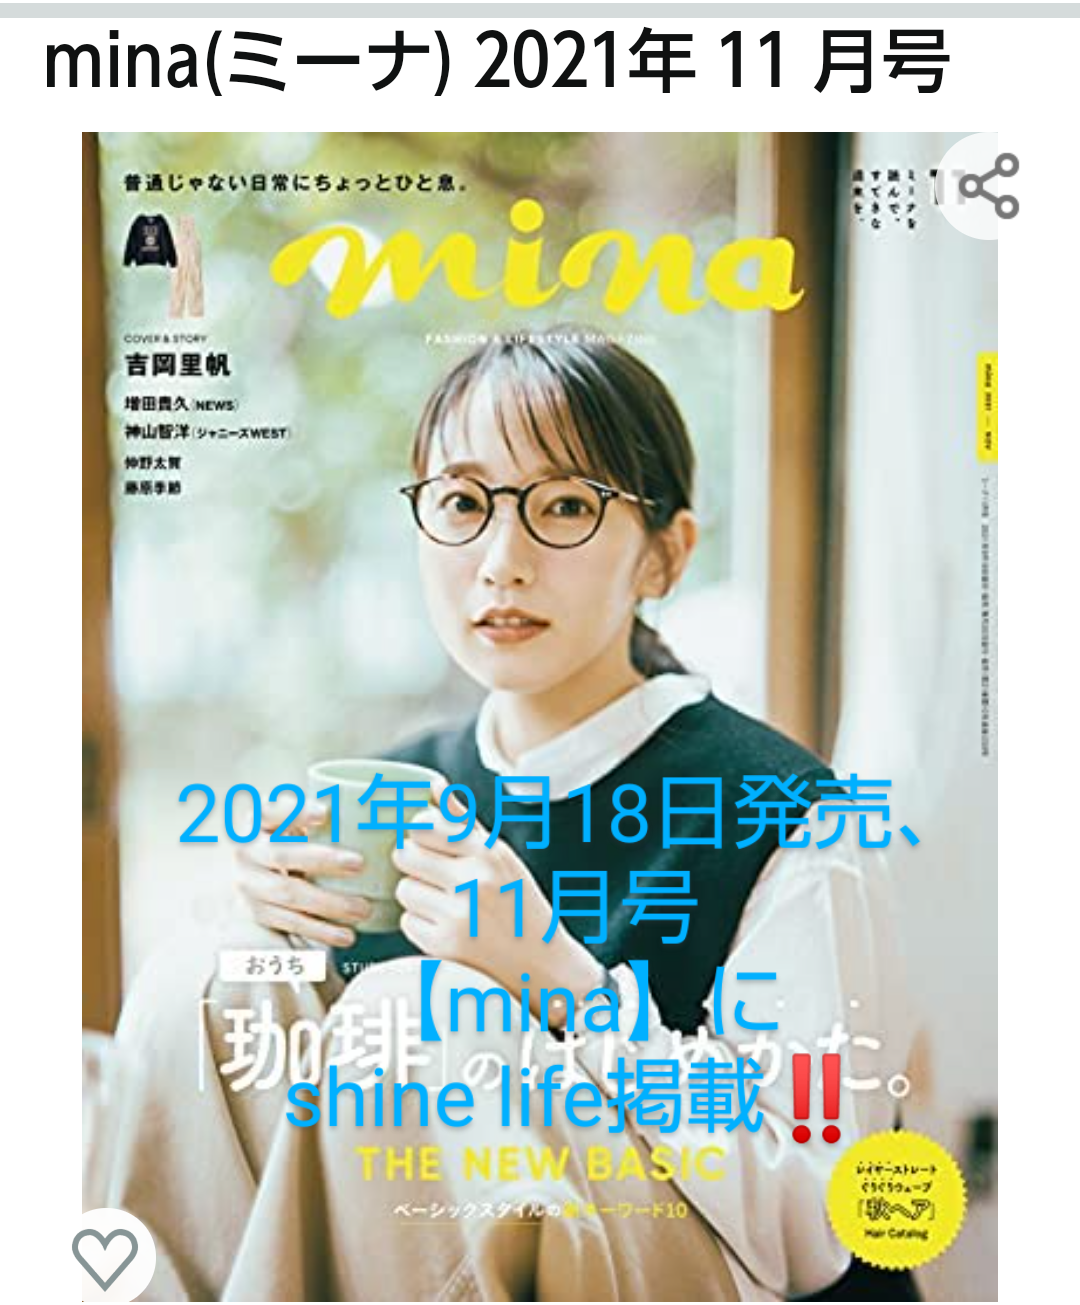 2021年9月18日発売、【mina】にshine lifeが掲載されました❗️